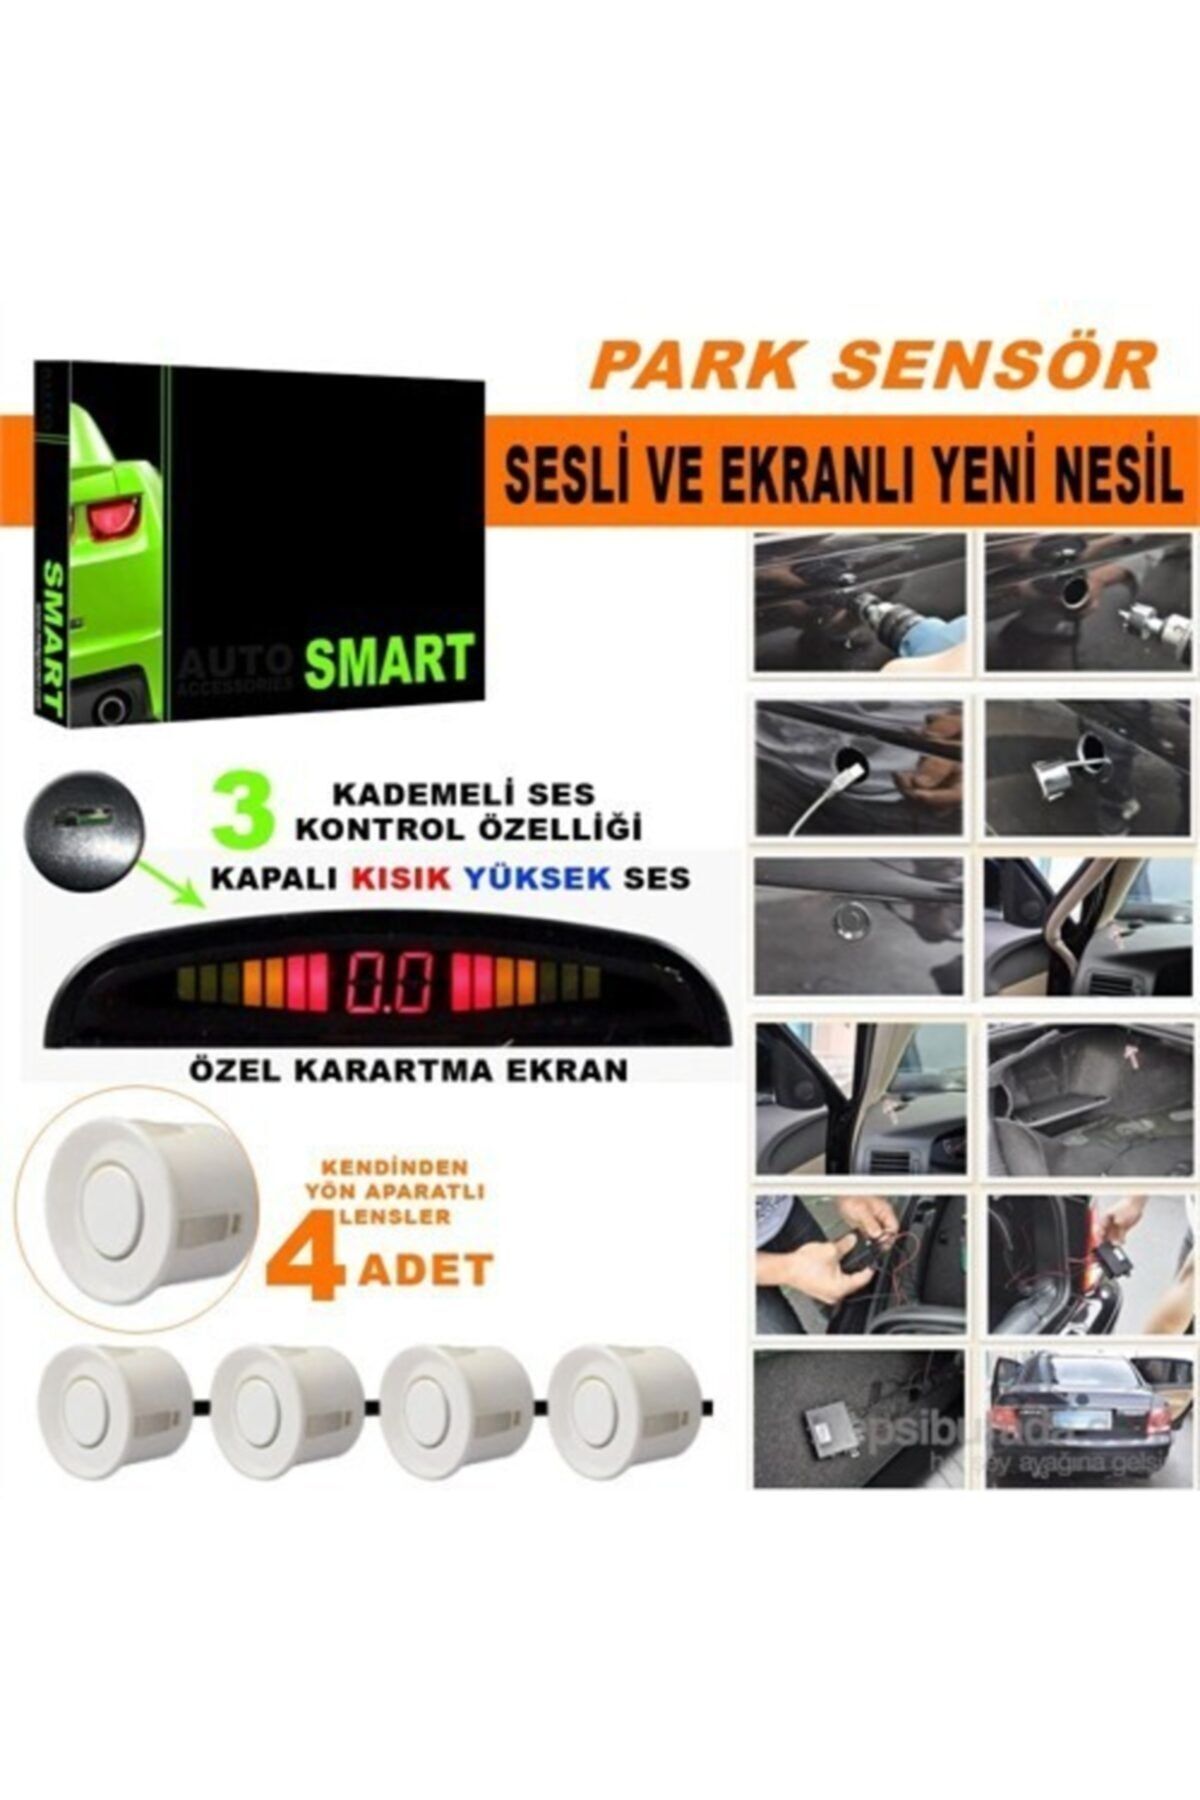 Marka Park Sensörü Ses Kontrol Düğmeli Ekranlı Beyaz Lensli